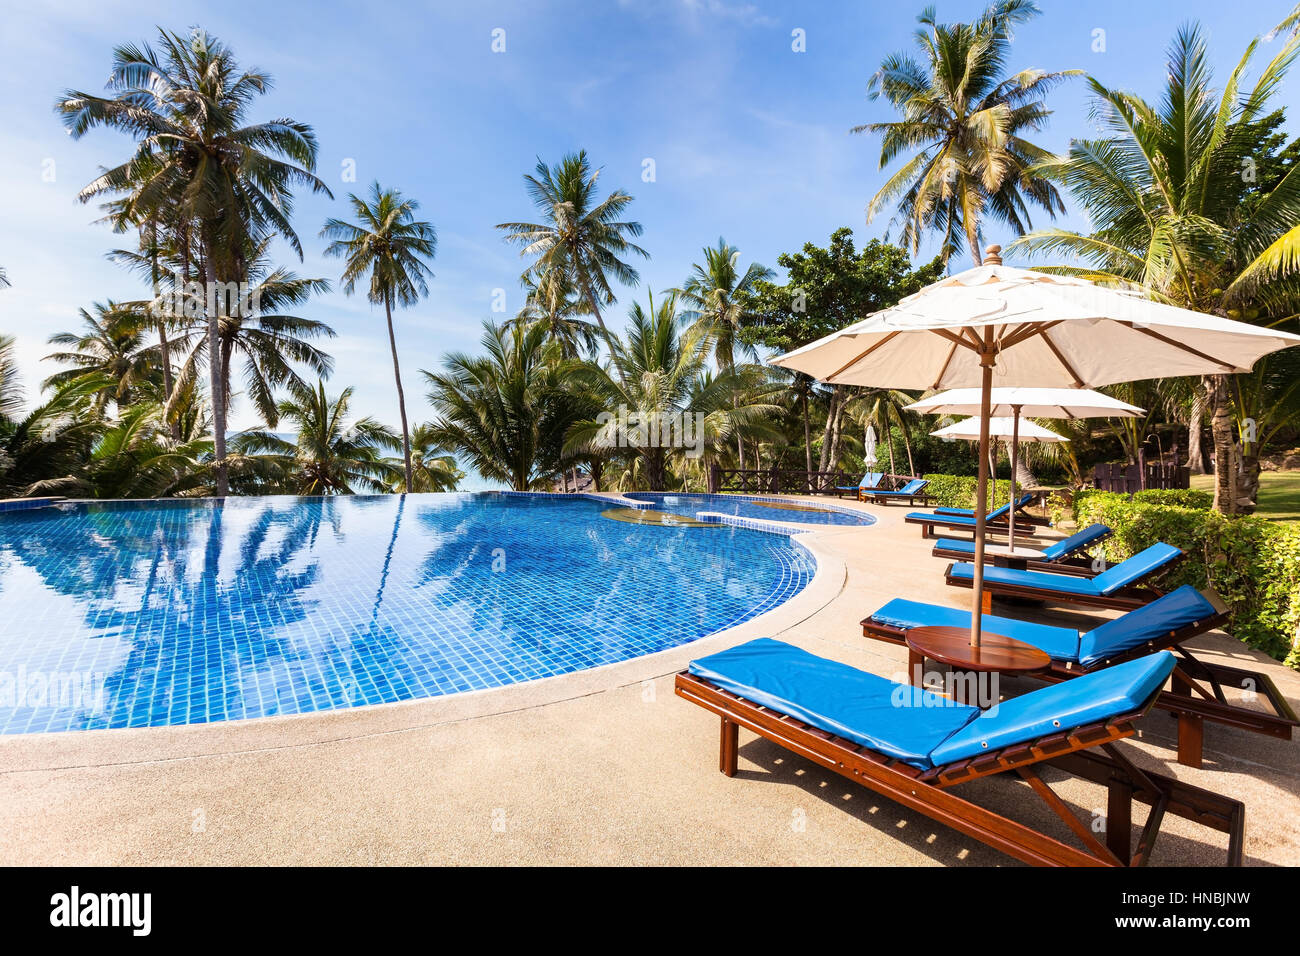 Hermoso hotel resort frente a la playa tropical con piscina, hamacas y palmeras durante un cálido día soleado paraíso destino de vacaciones Foto de stock